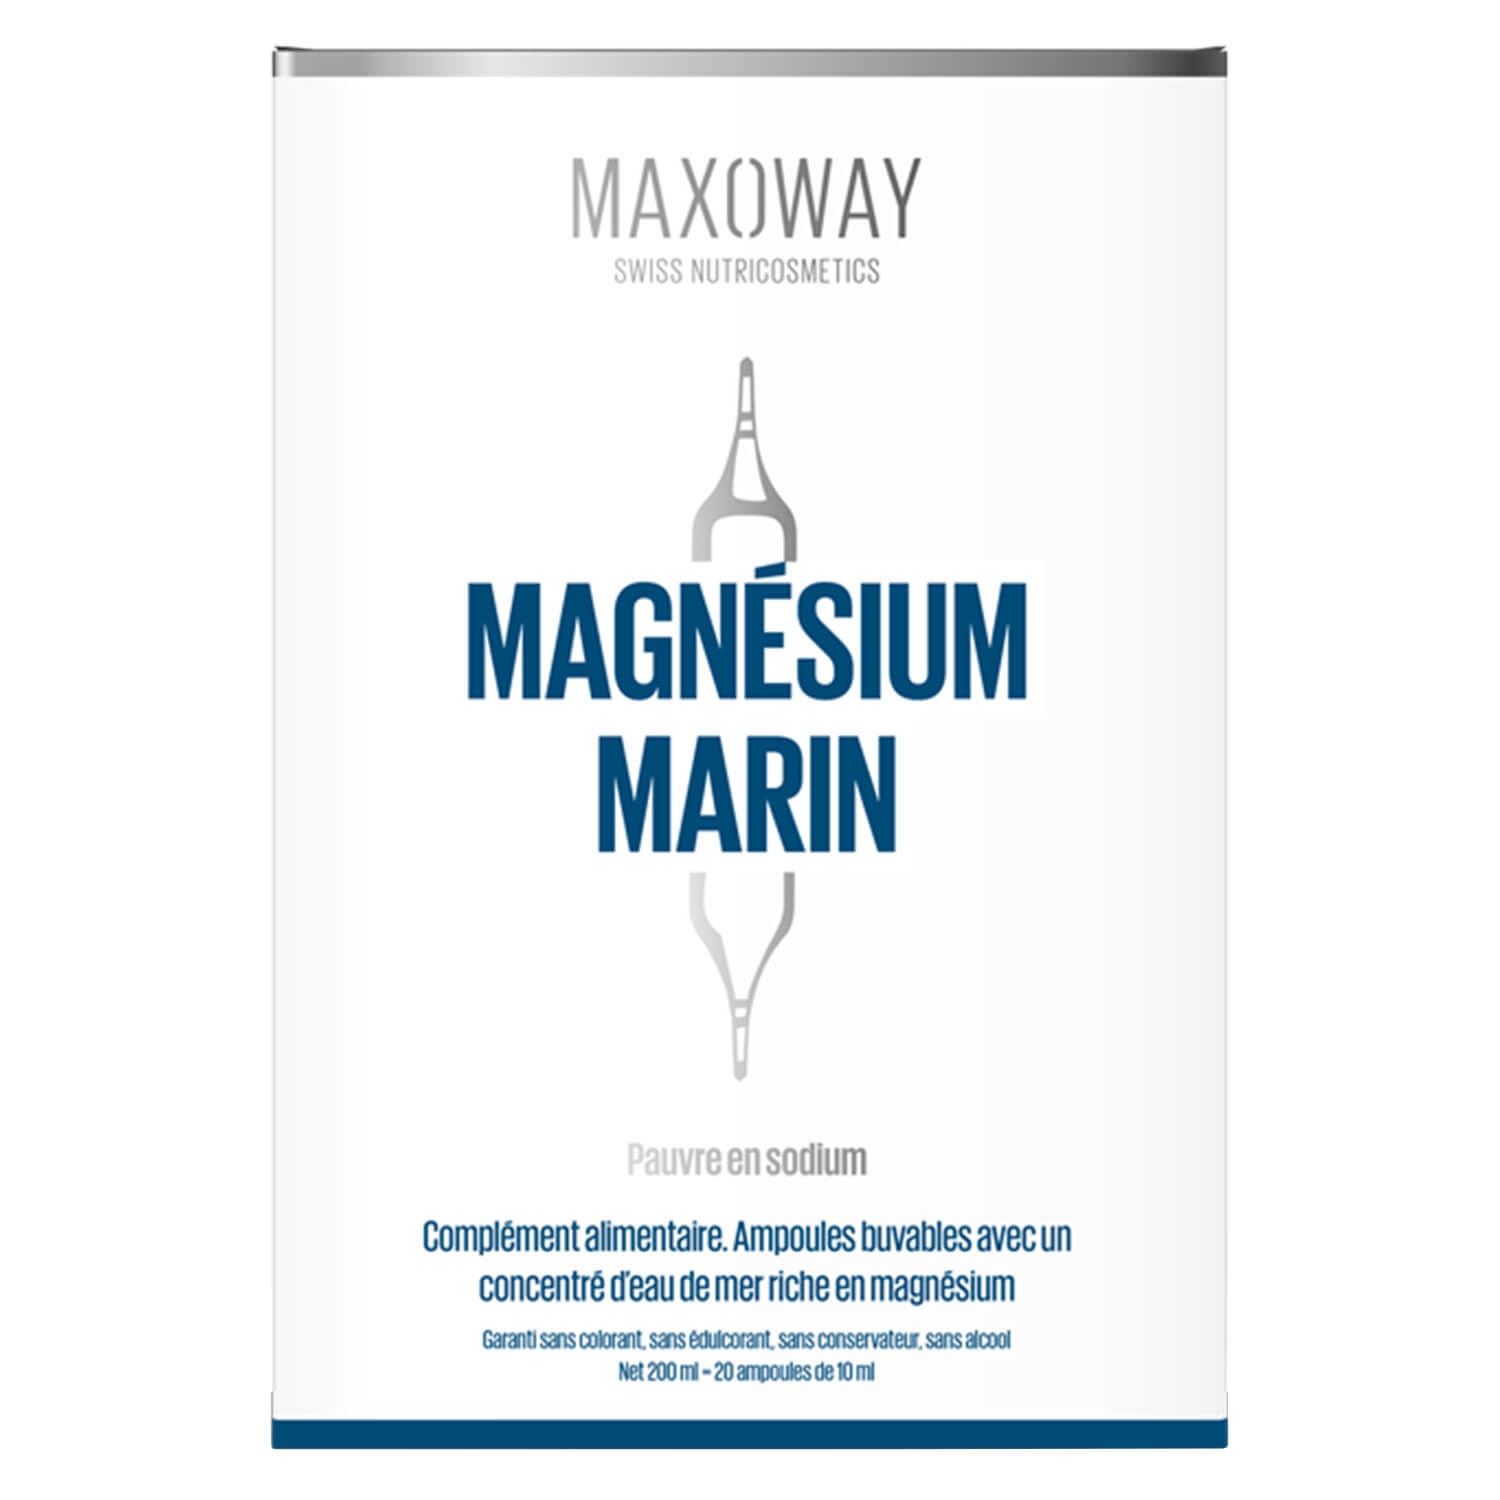 Produktbild von Maxoway - Magnésium Marin